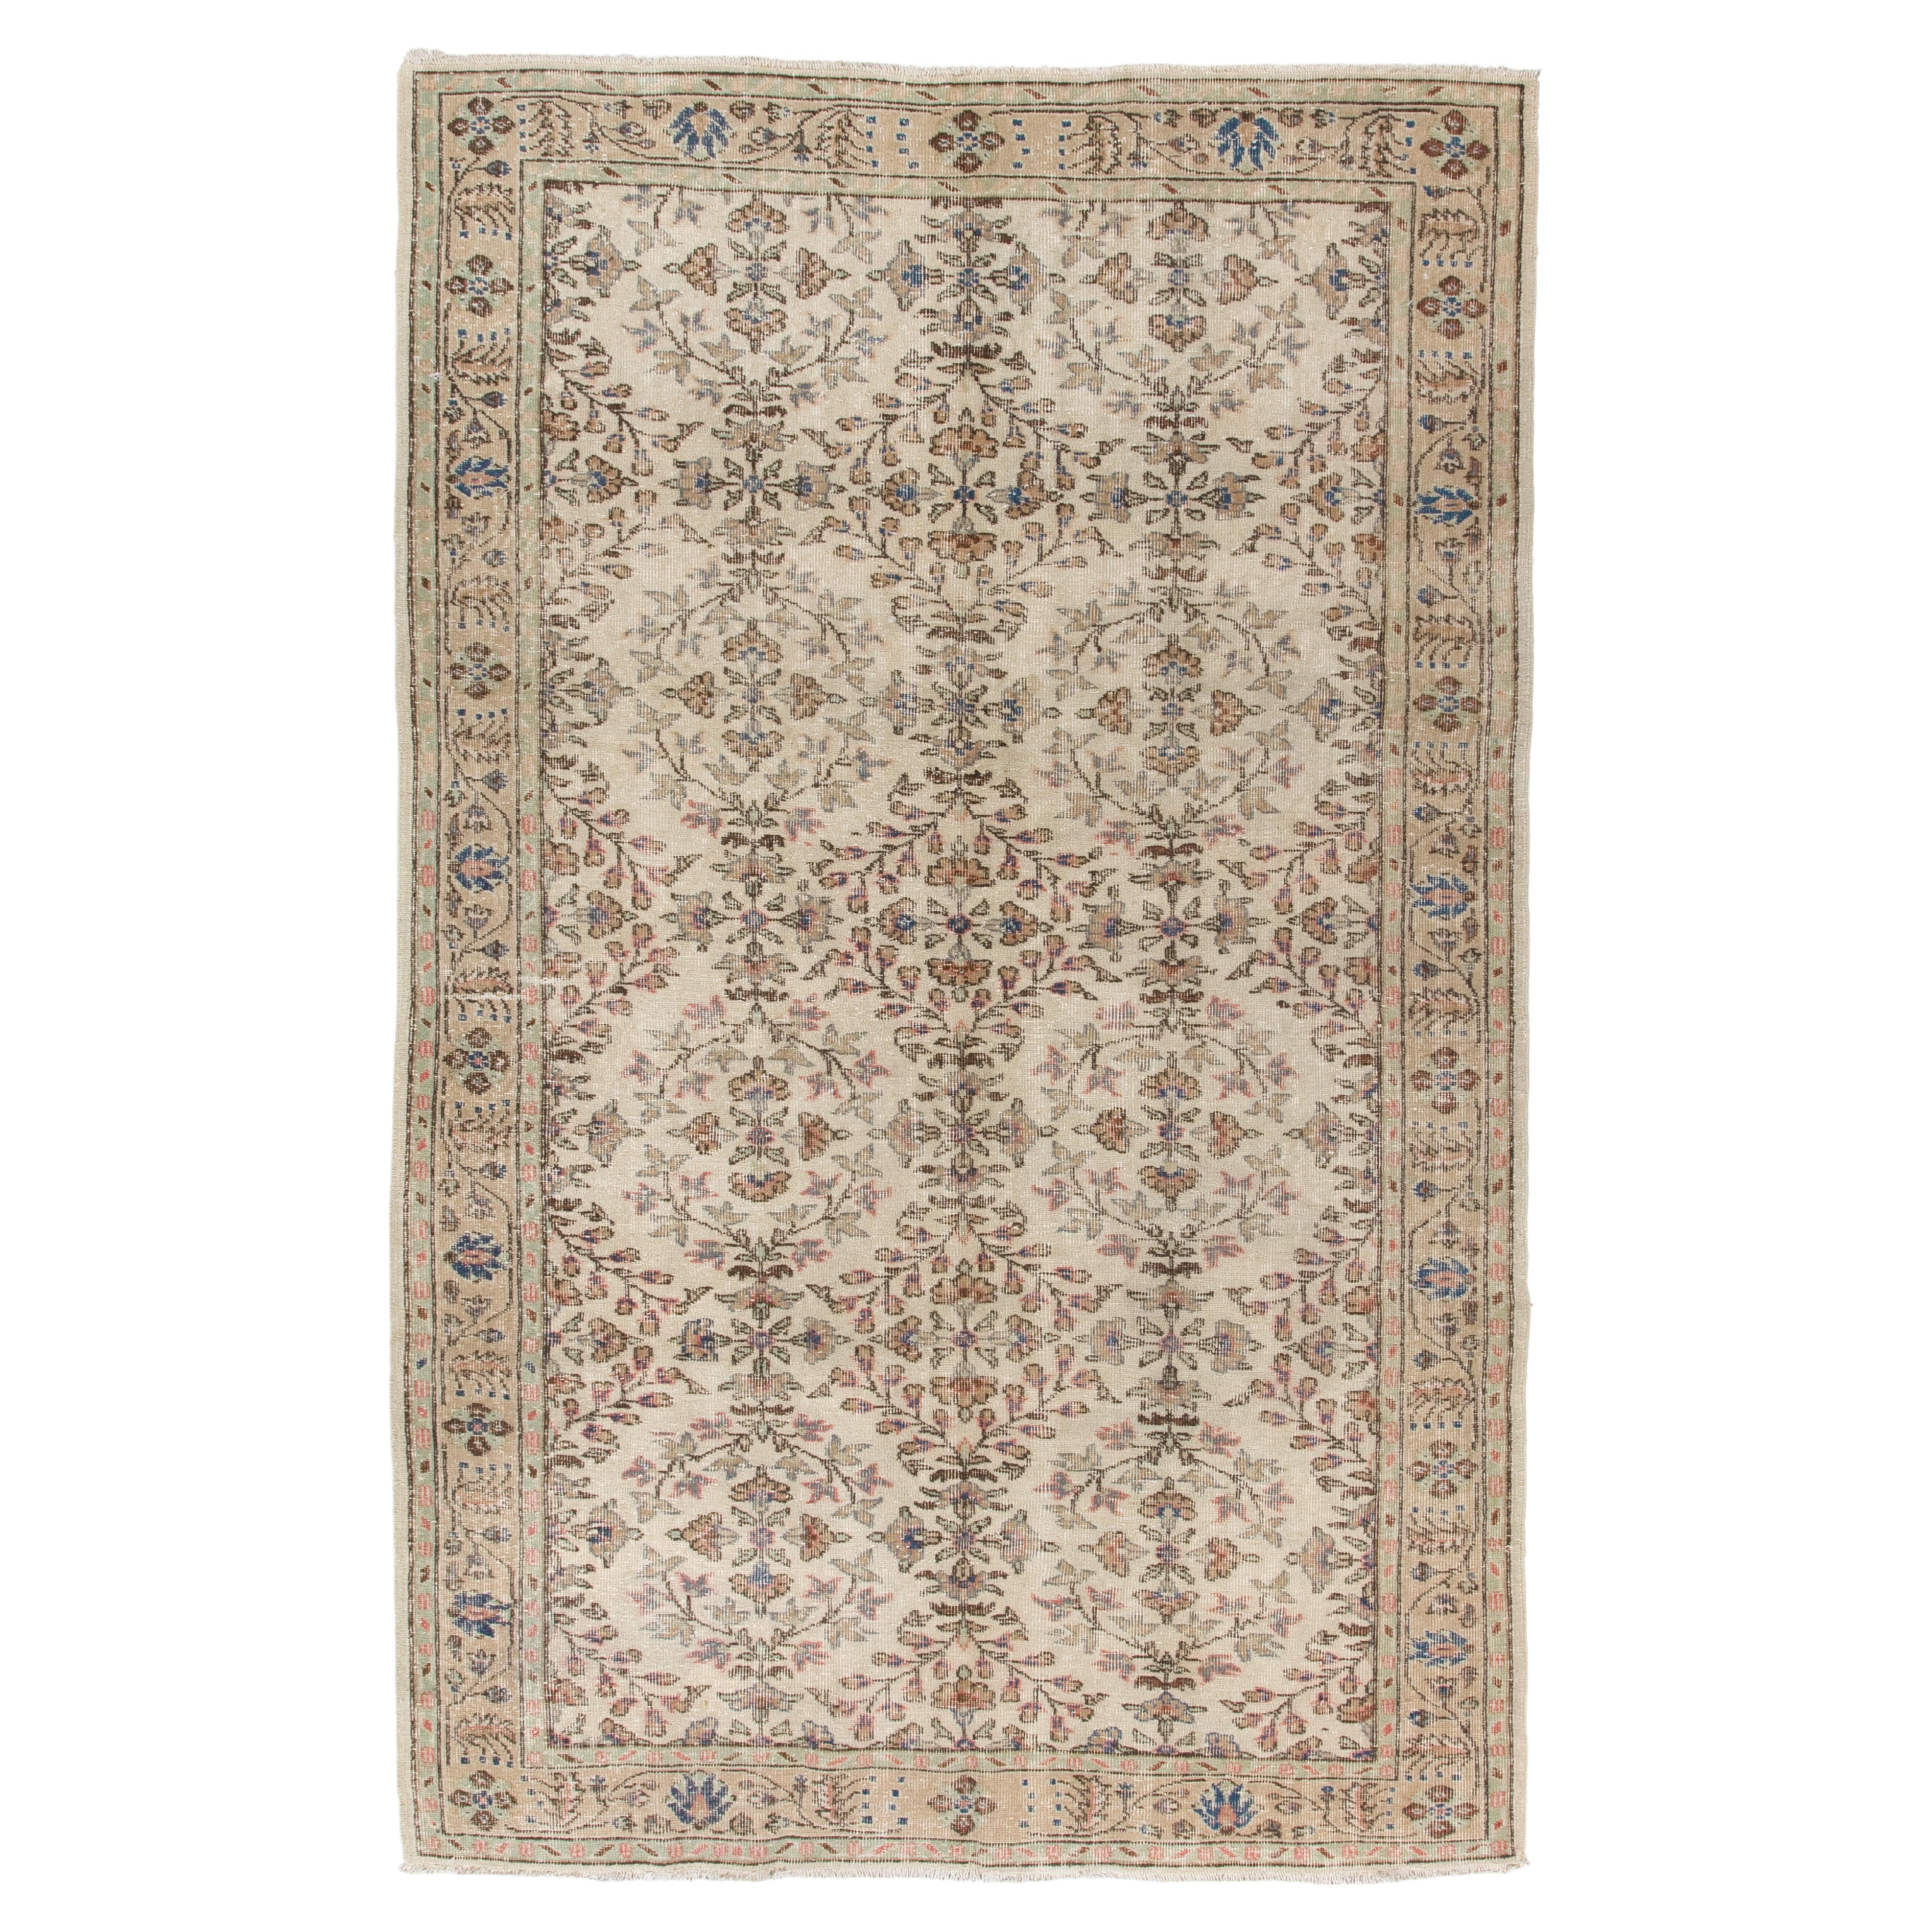 6x9 Ft Vintage Oushak-Teppich in weichen, gedämpften Farben, handgeknüpfter Wollteppich